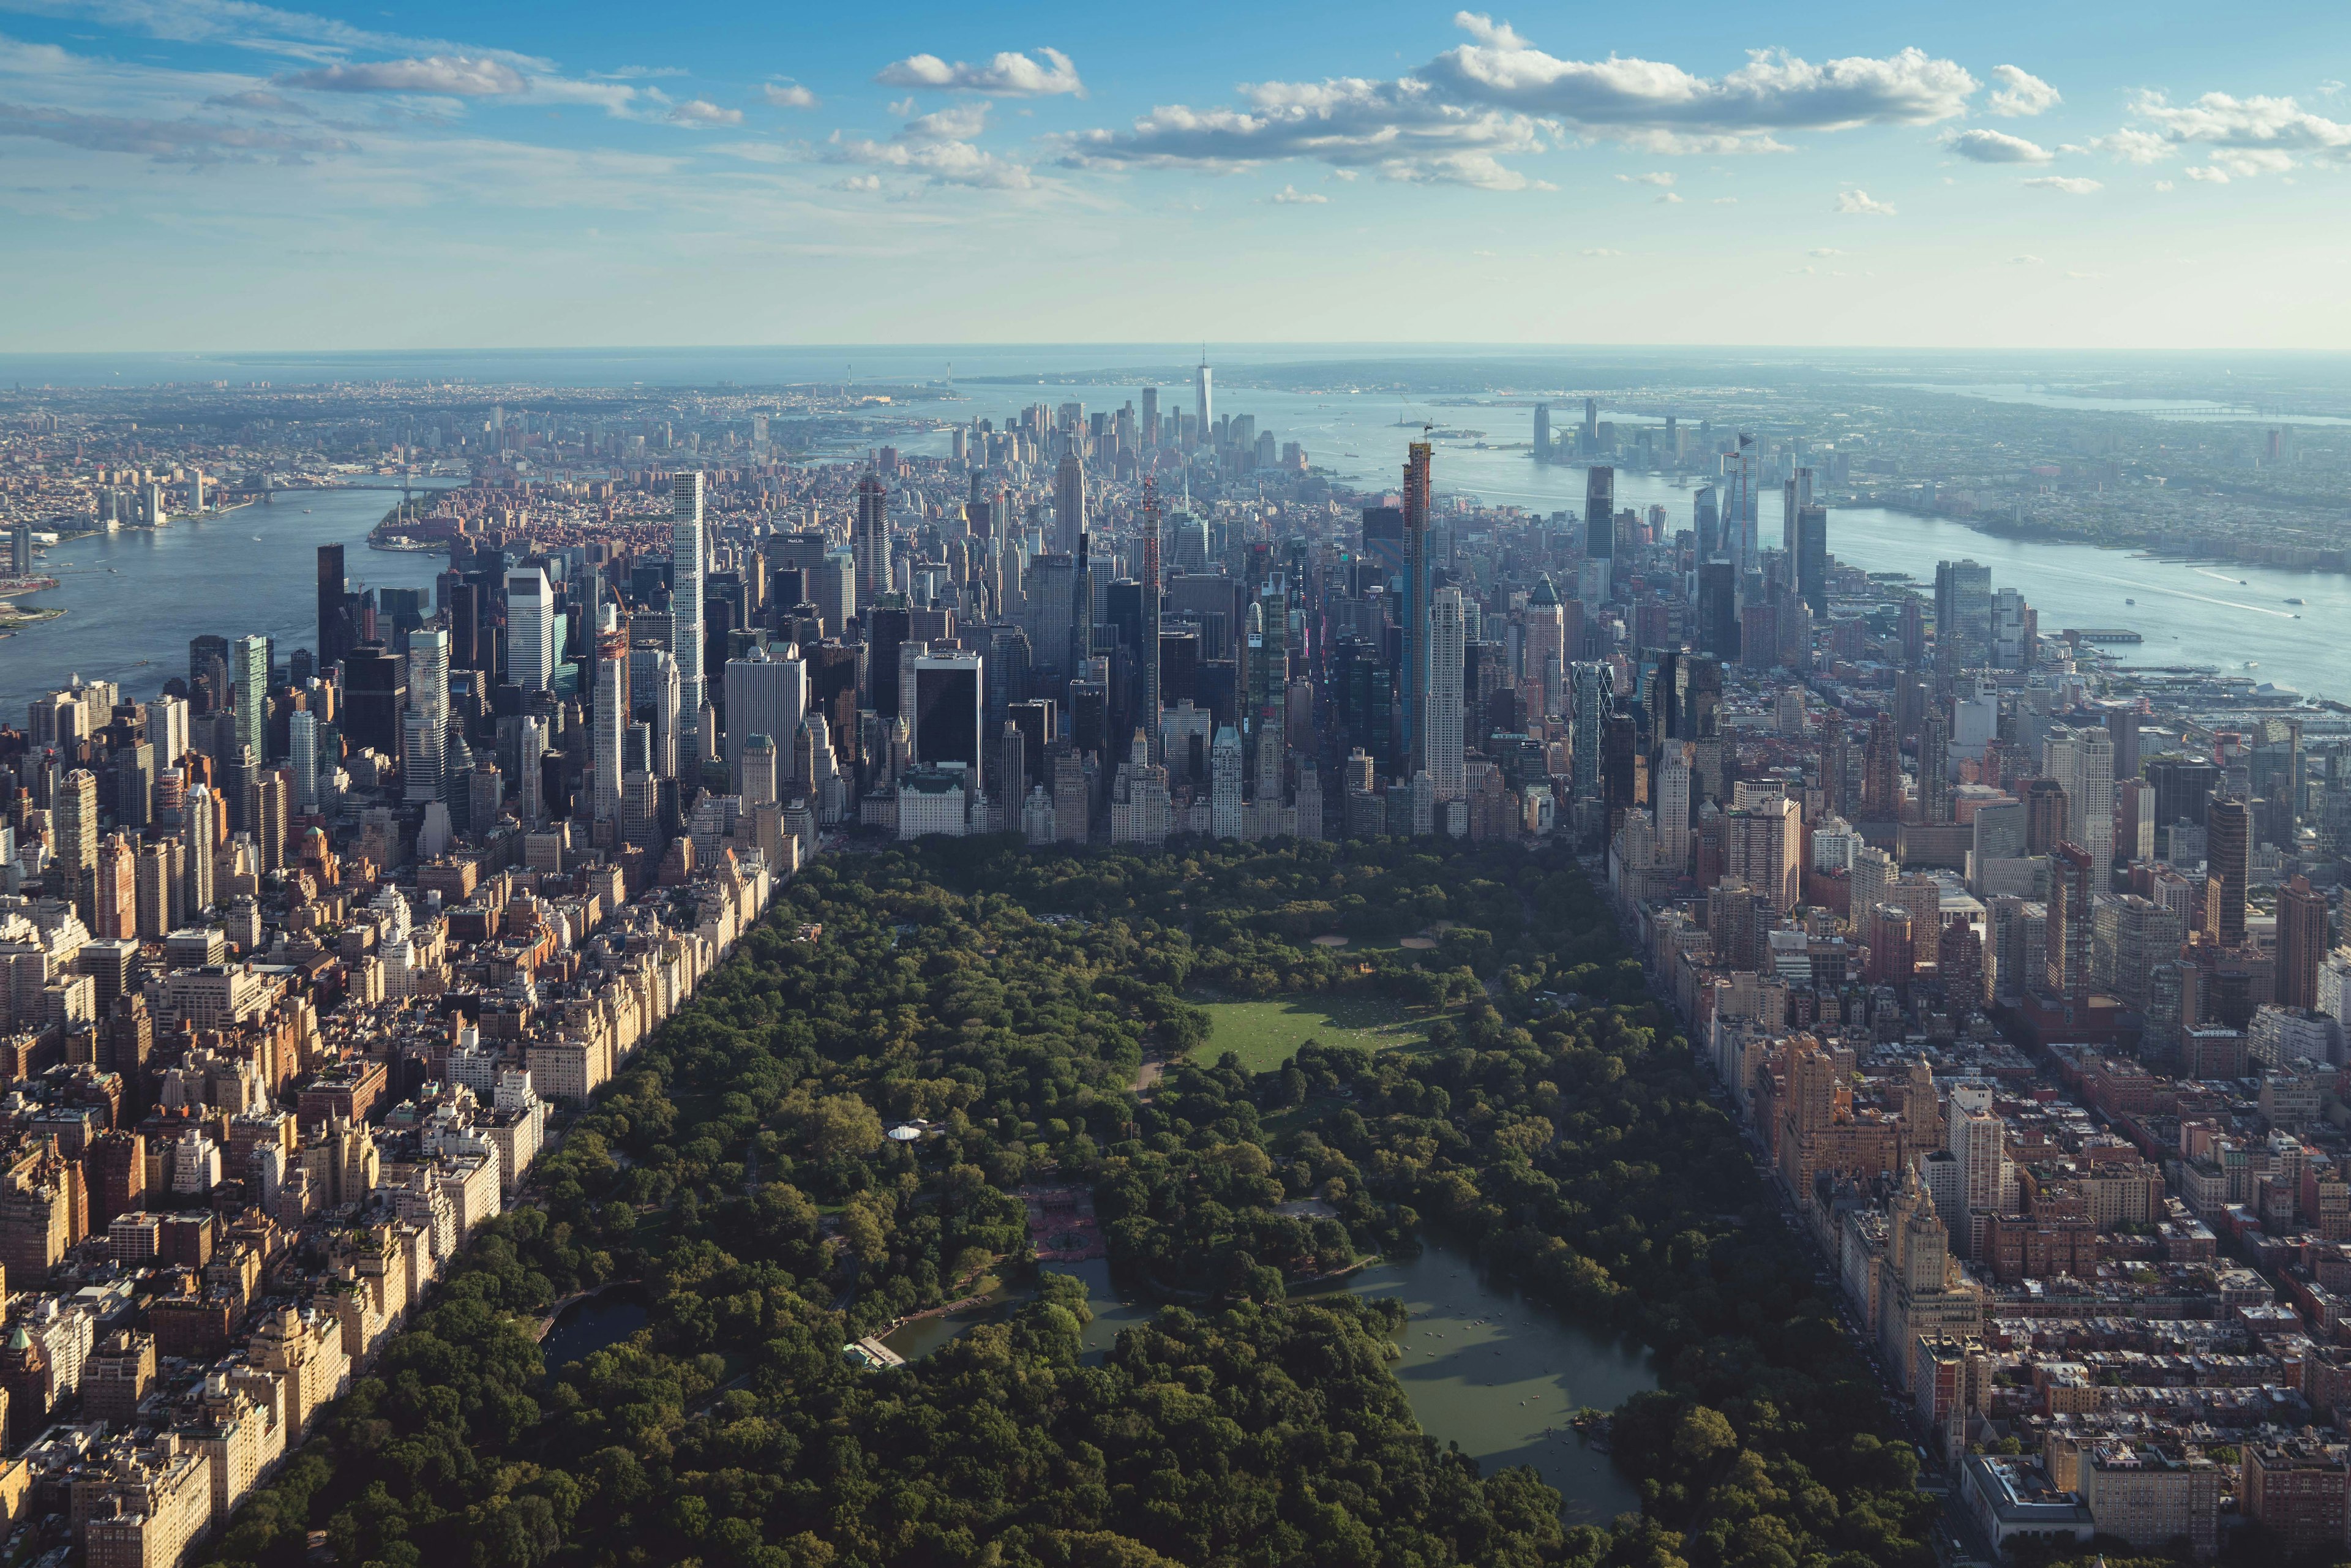 New York Central Park visto dall'alto, con i grattacieli che lo circondano